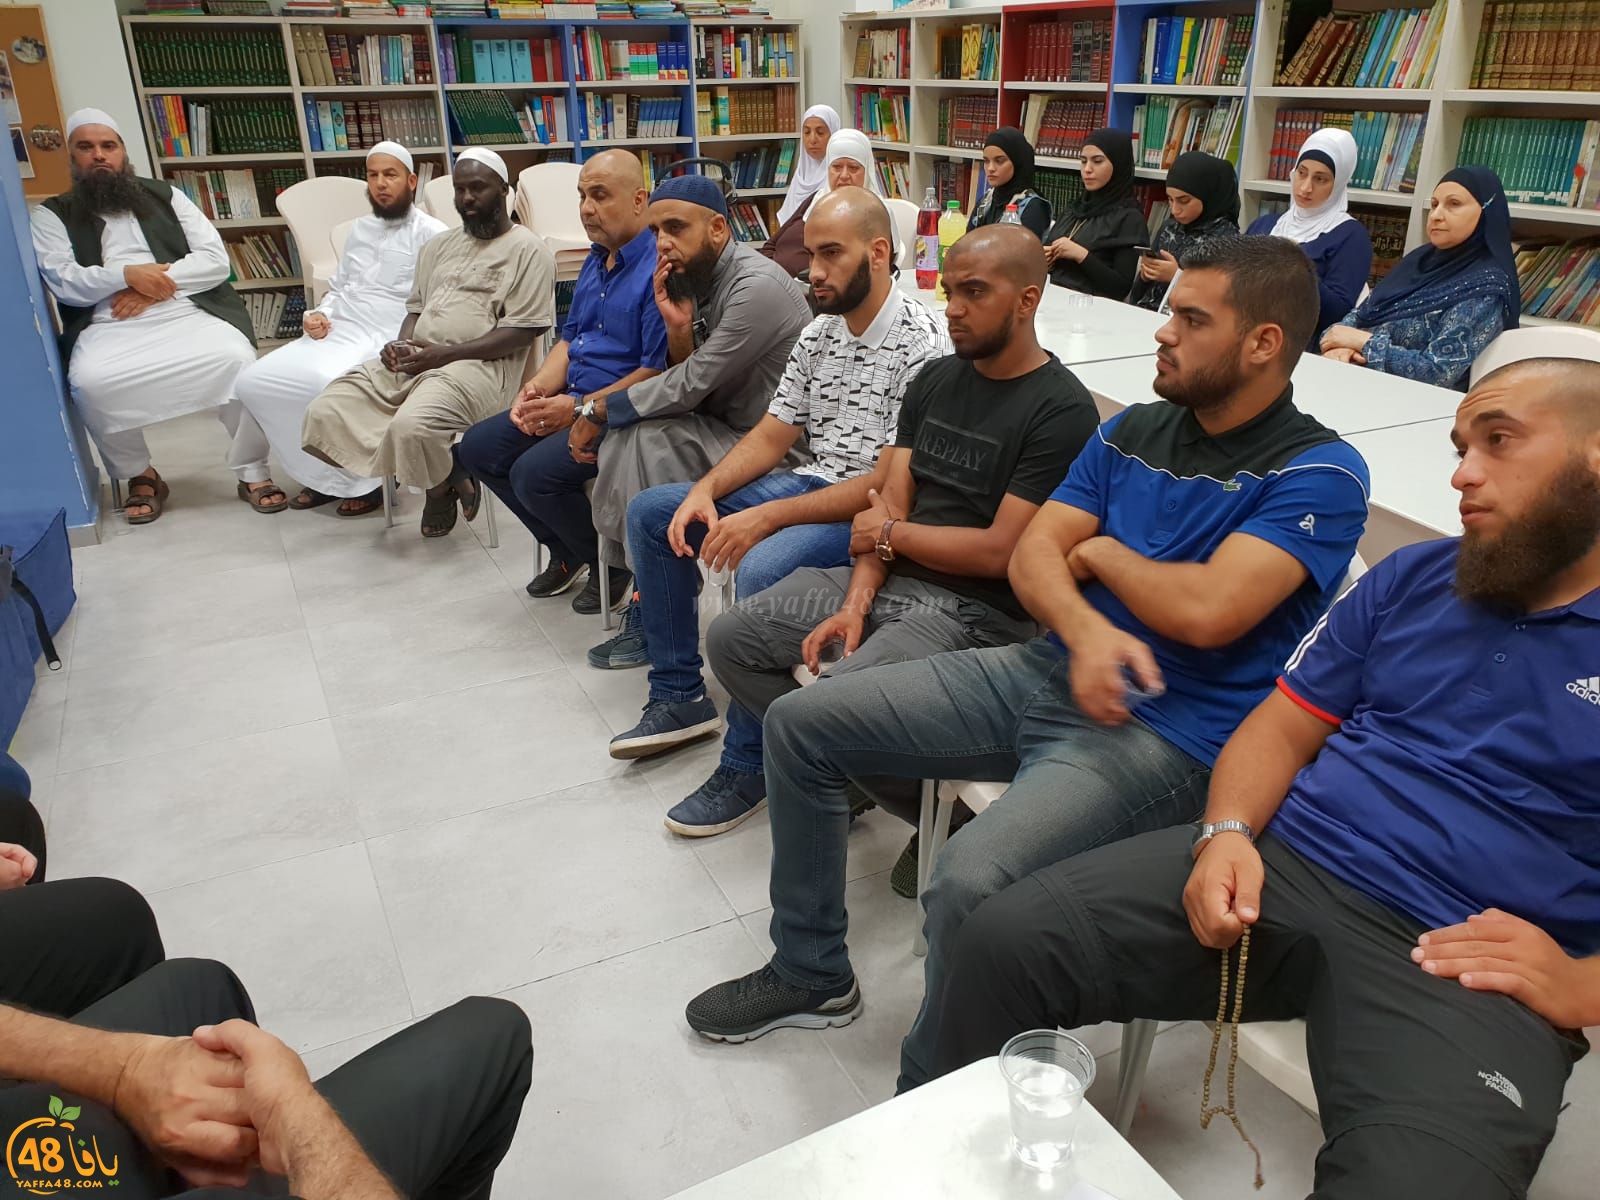  بالصور: يوم مفتوح للتسجيل في أكاديمية العلوم الشرعية كفربرا في مدينة يافا